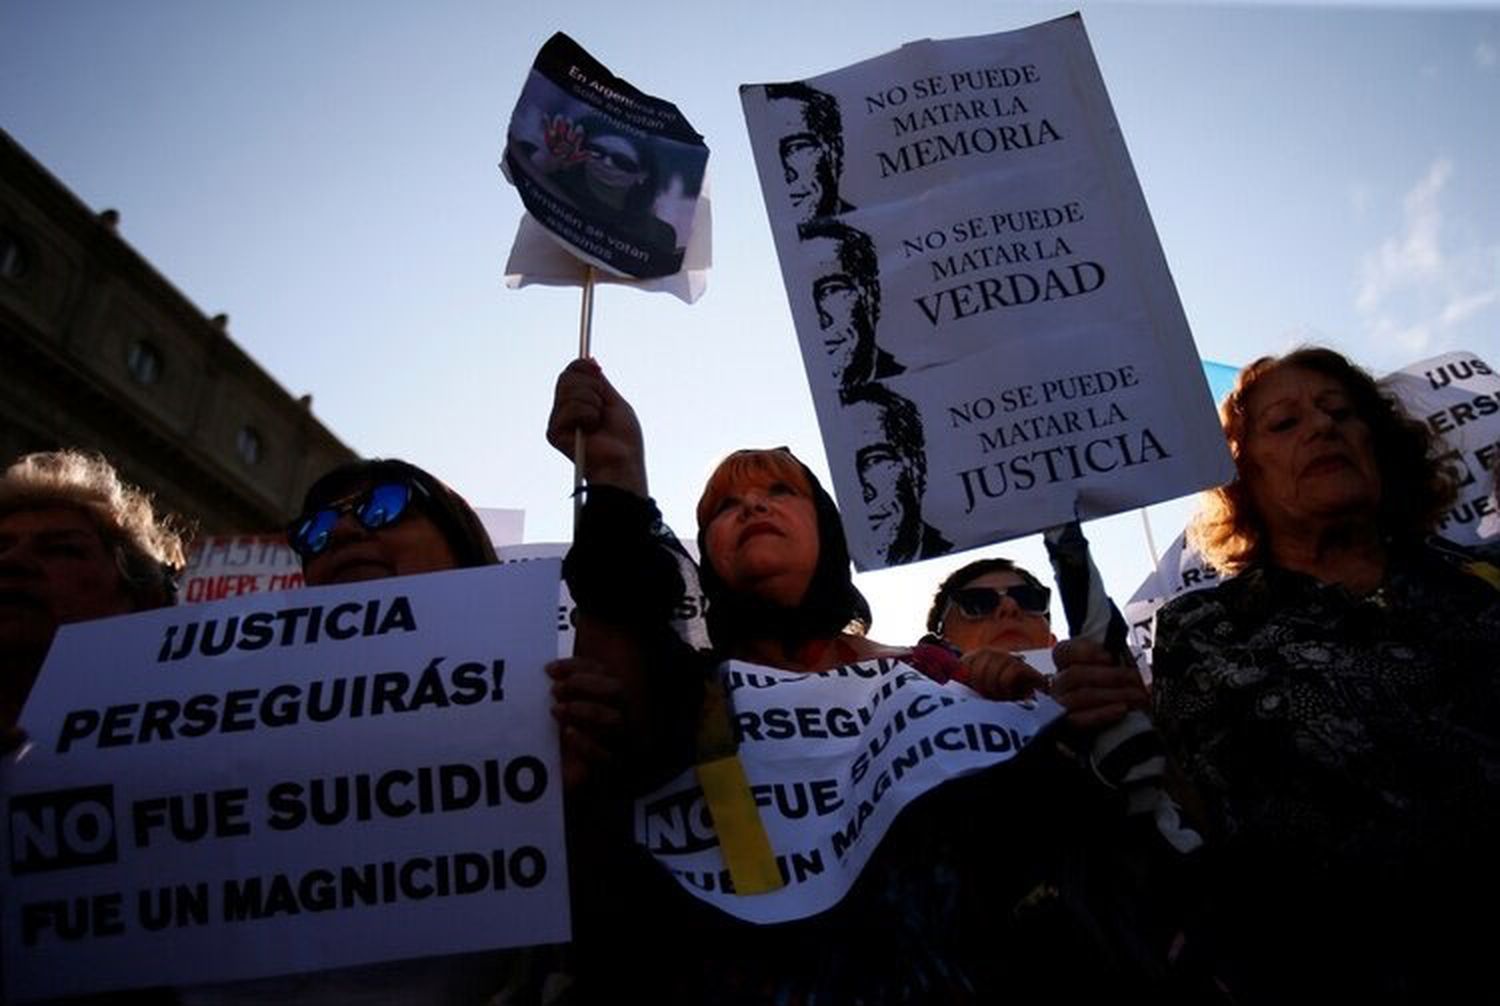 Homenaje a Alberto Nisman a 5 años de  su muerte: “No fue suicidio, fue magnicidio”